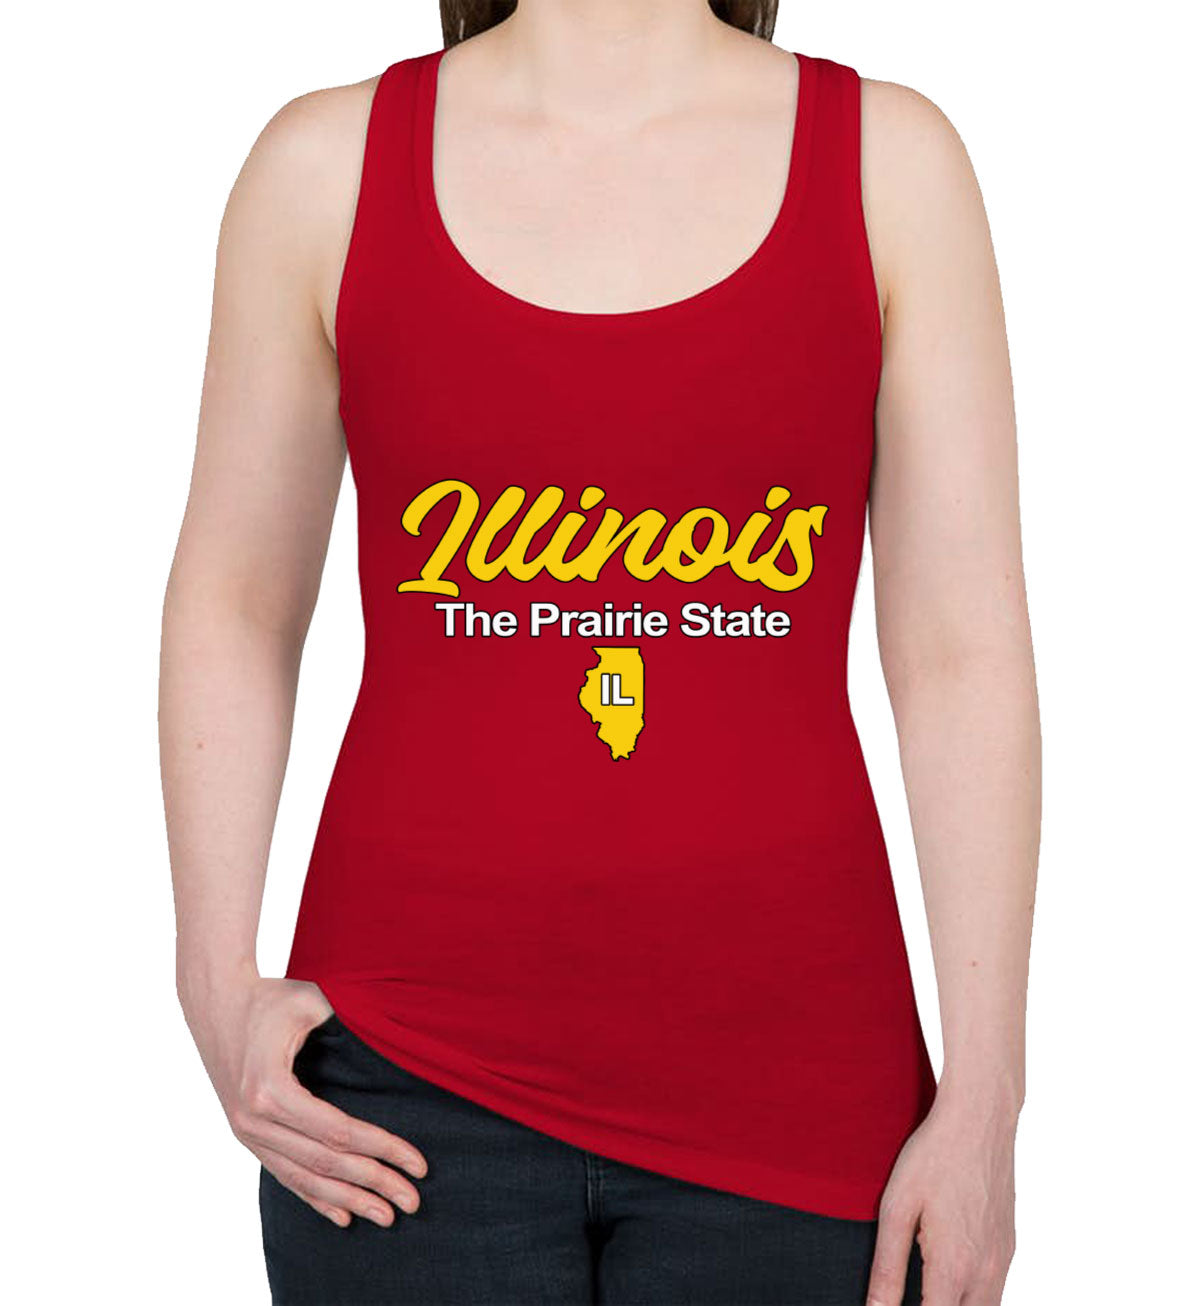 Illinois The Prairie State Women's Racerback Tank Top